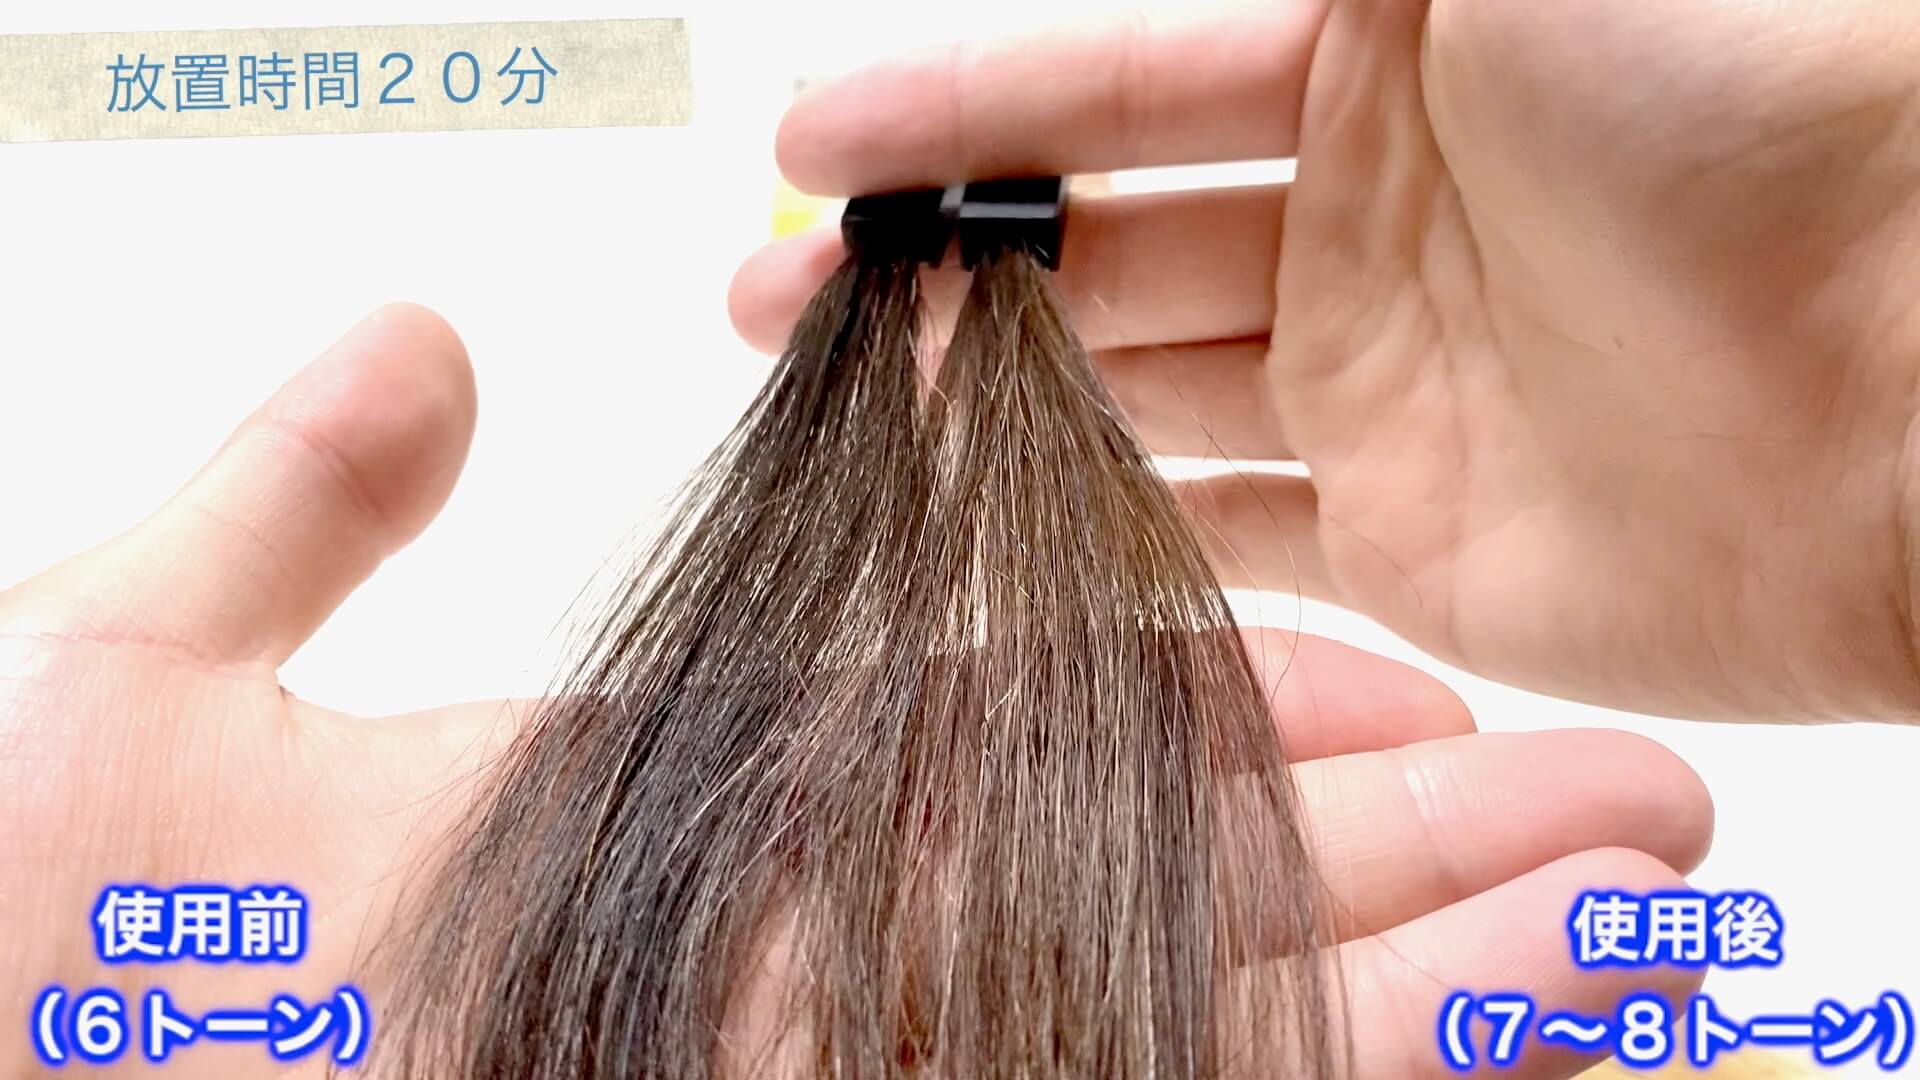 【髪を明るくしたい方必見】ブリーチなしで髪を明るくできる市販のカラー剤8選 - HAIR ART